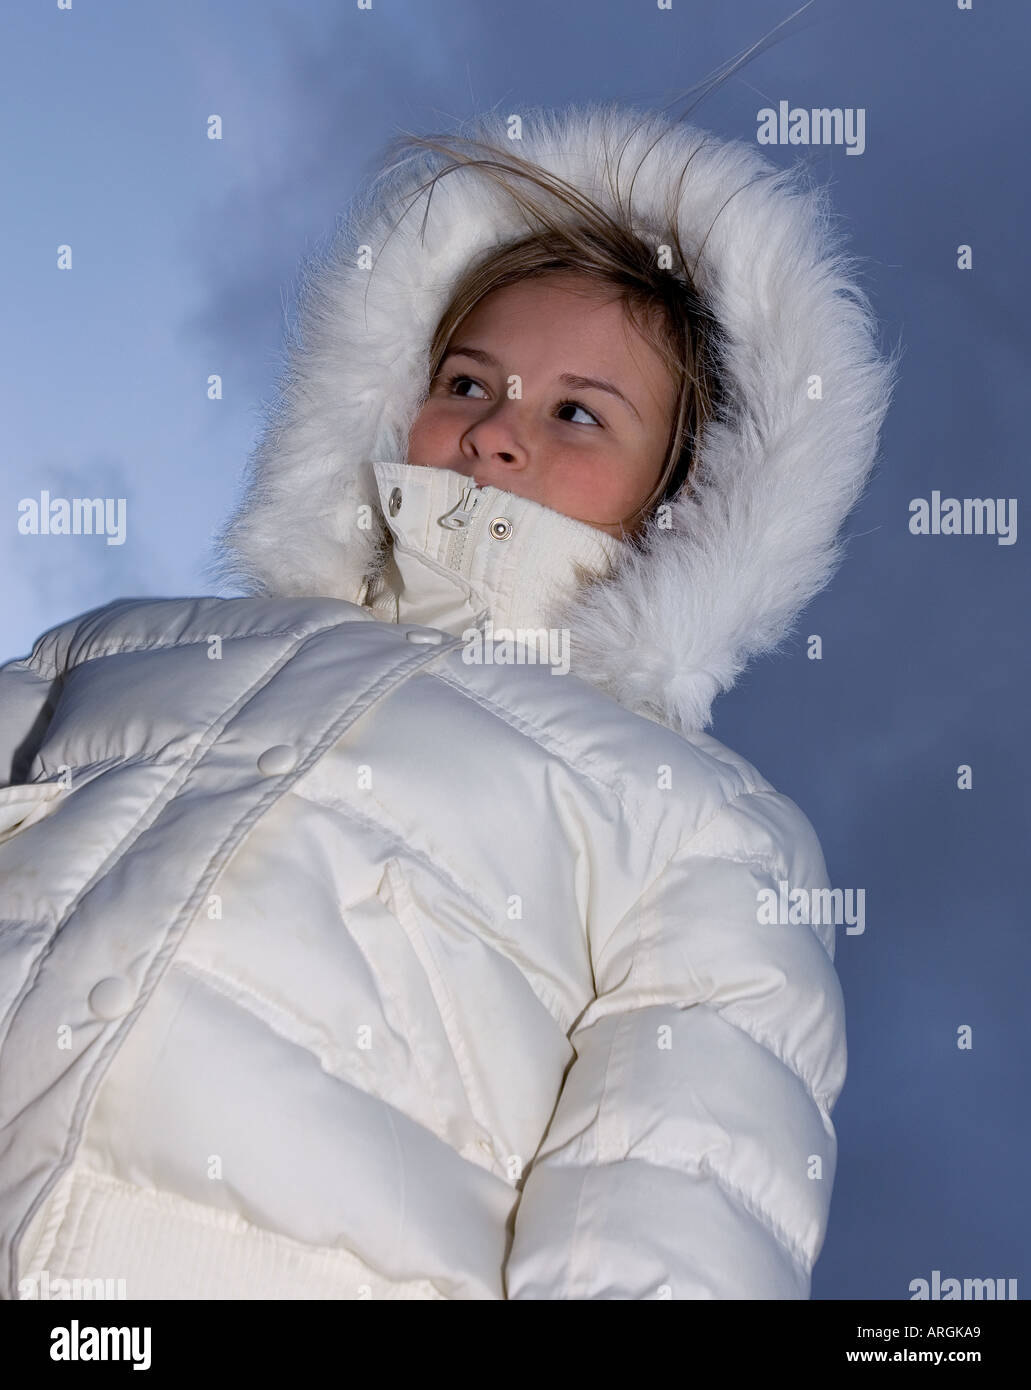 Buy > girls winter coat with hood > in stock